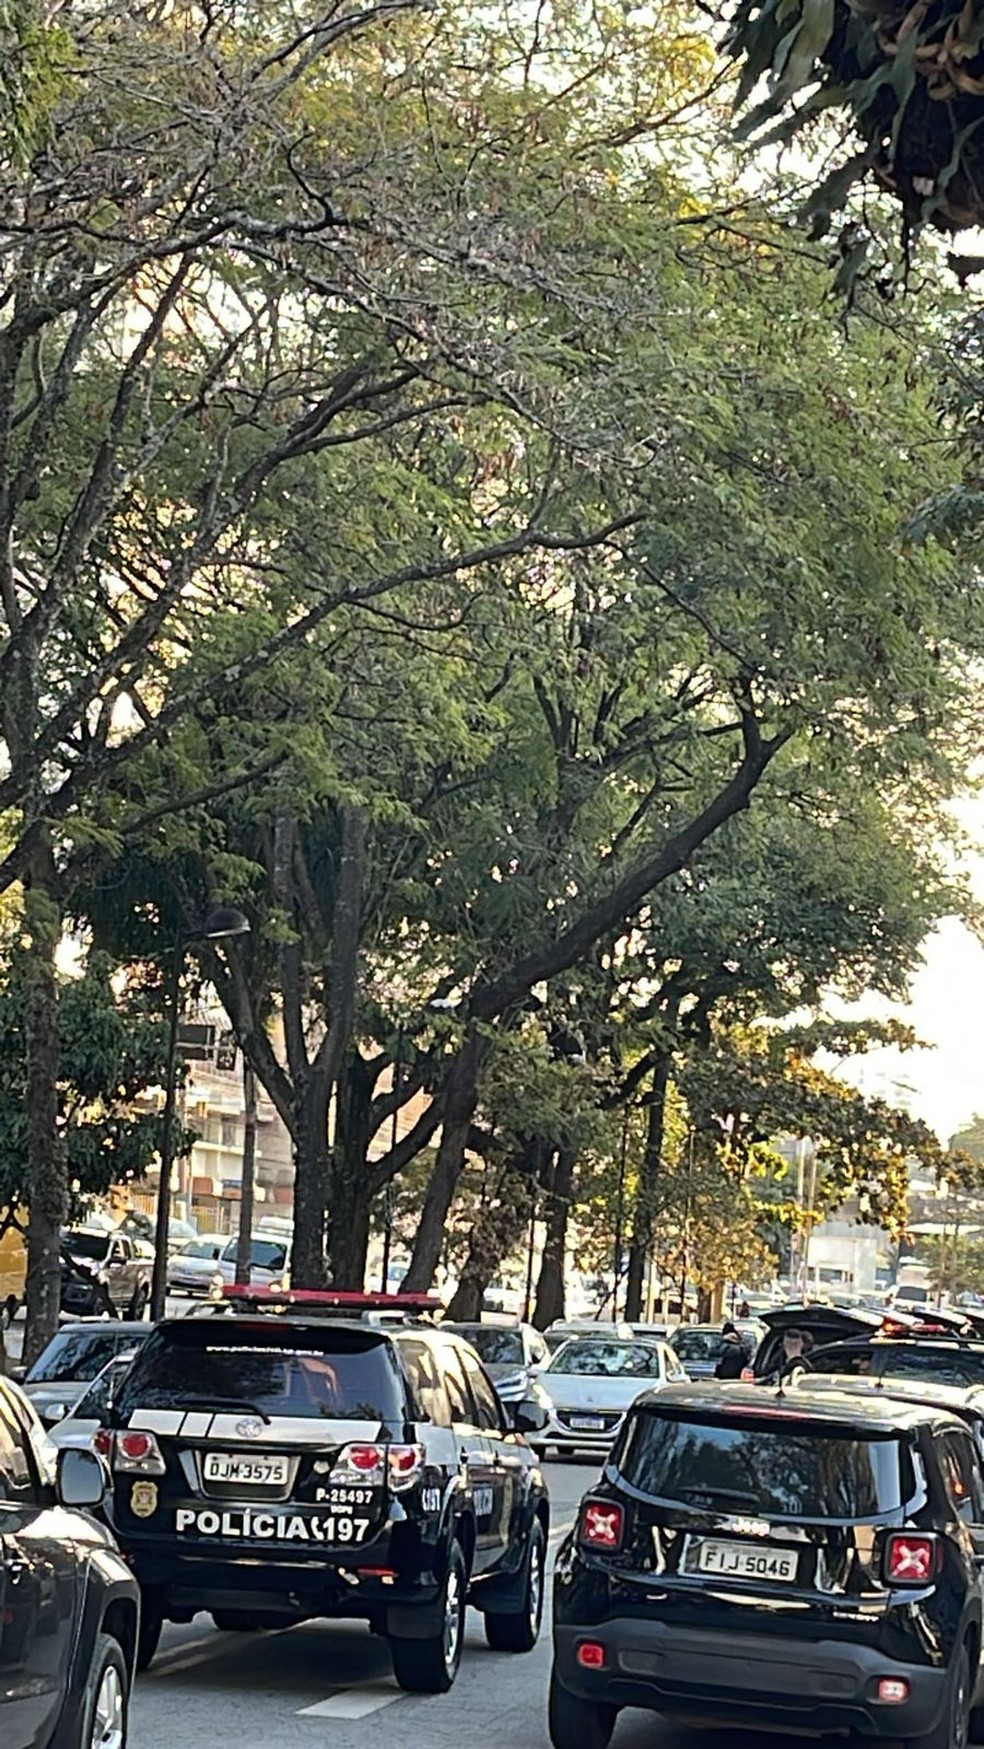 Carros de Polícia no Parque São Jorge, sede do Corinthians